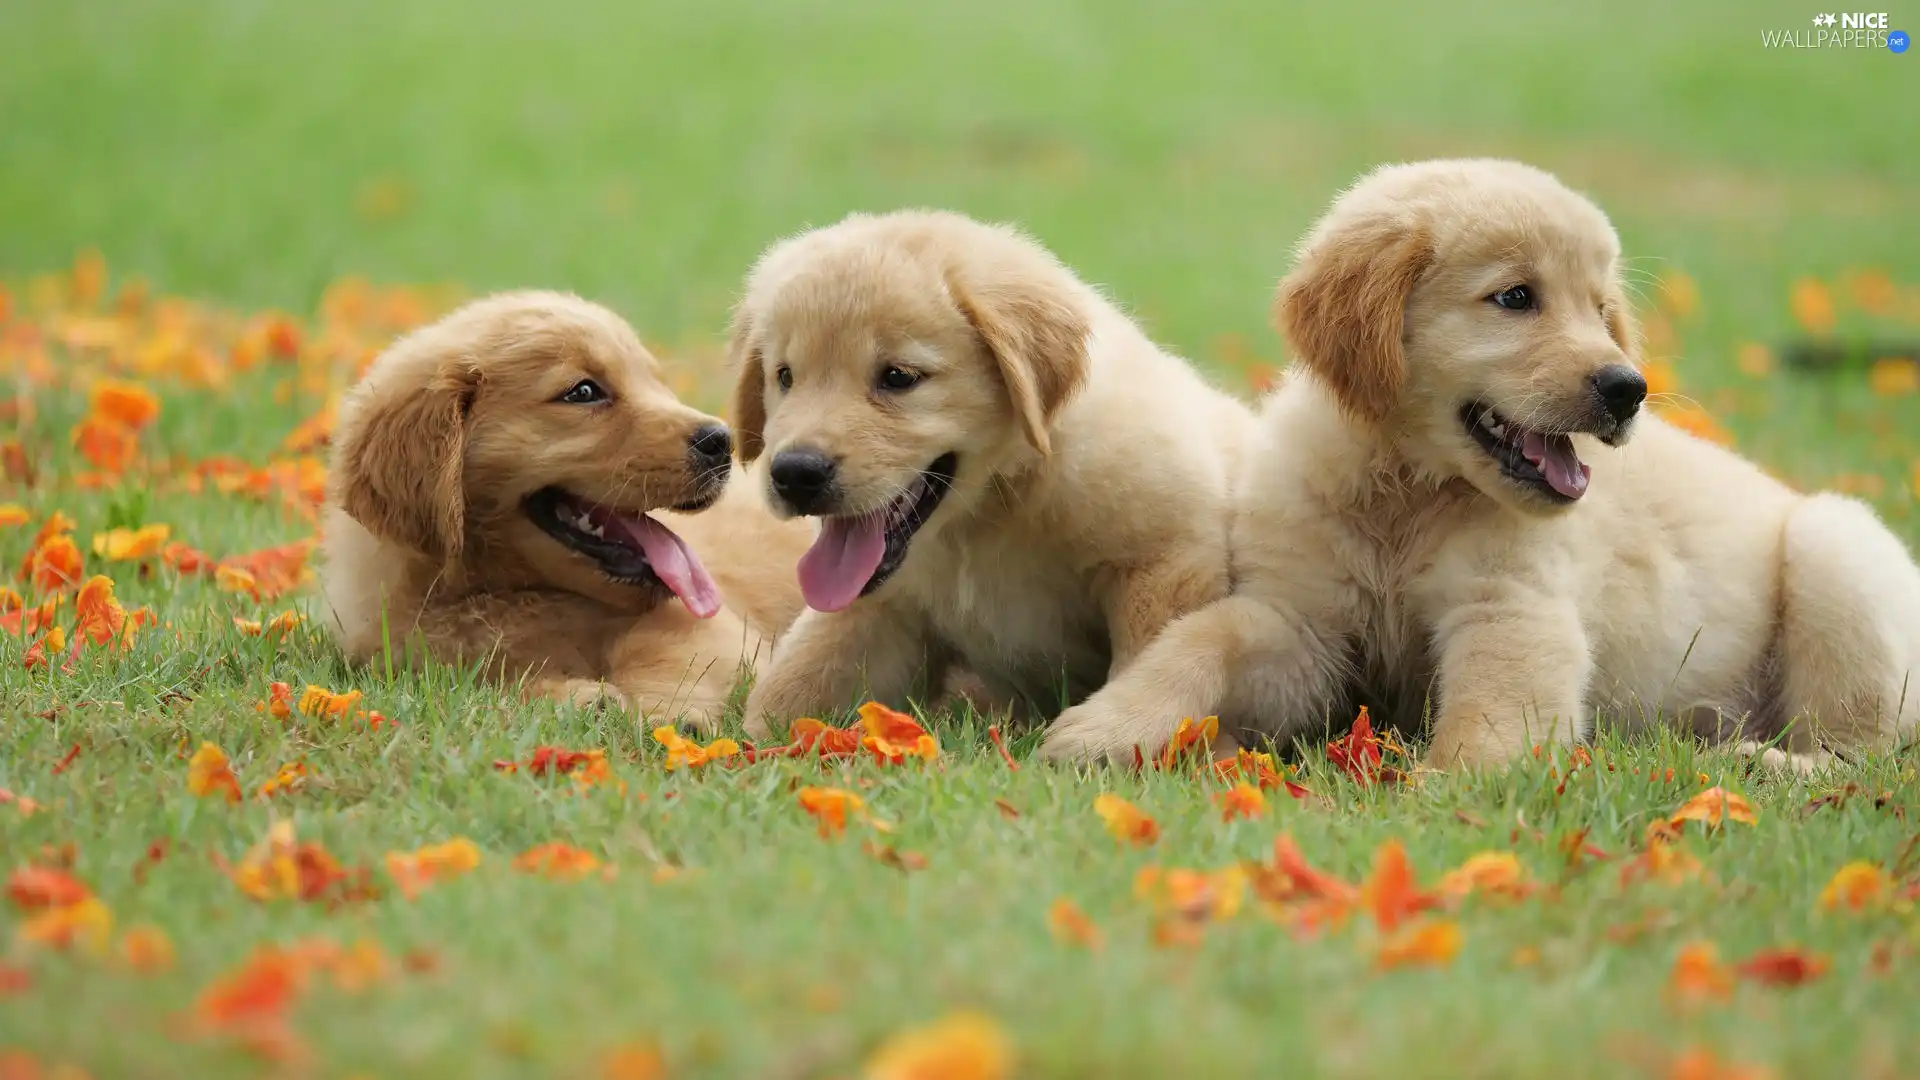 grass, Leaf, puppies, Golden Retriever, Three